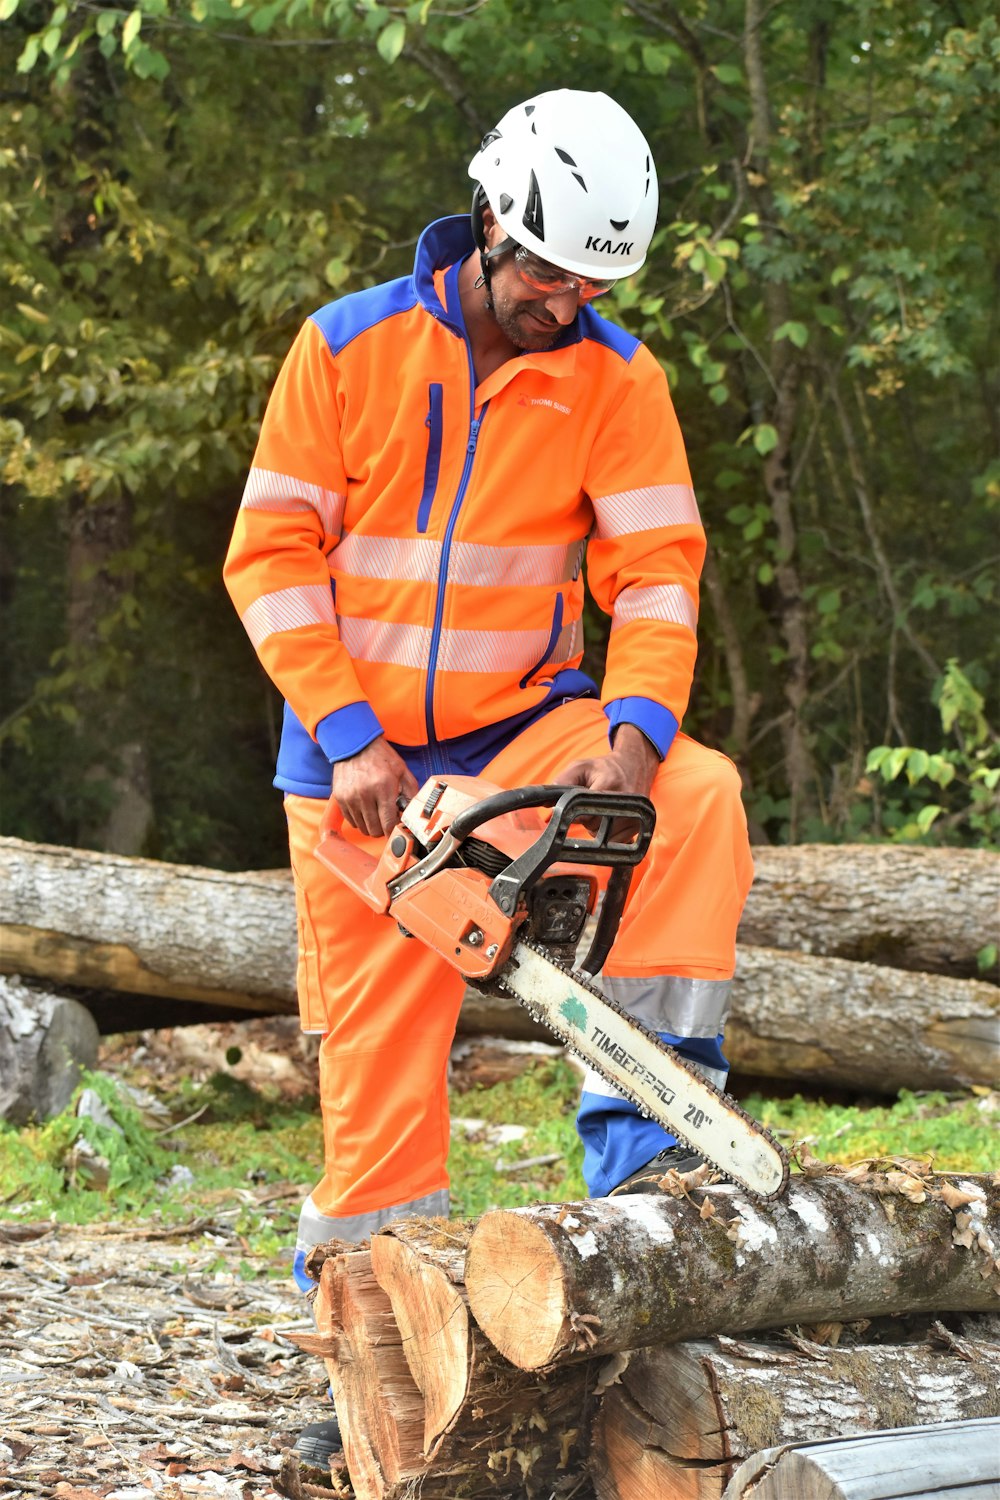 Un uomo con una giacca arancione e blu sta tagliando un tronco